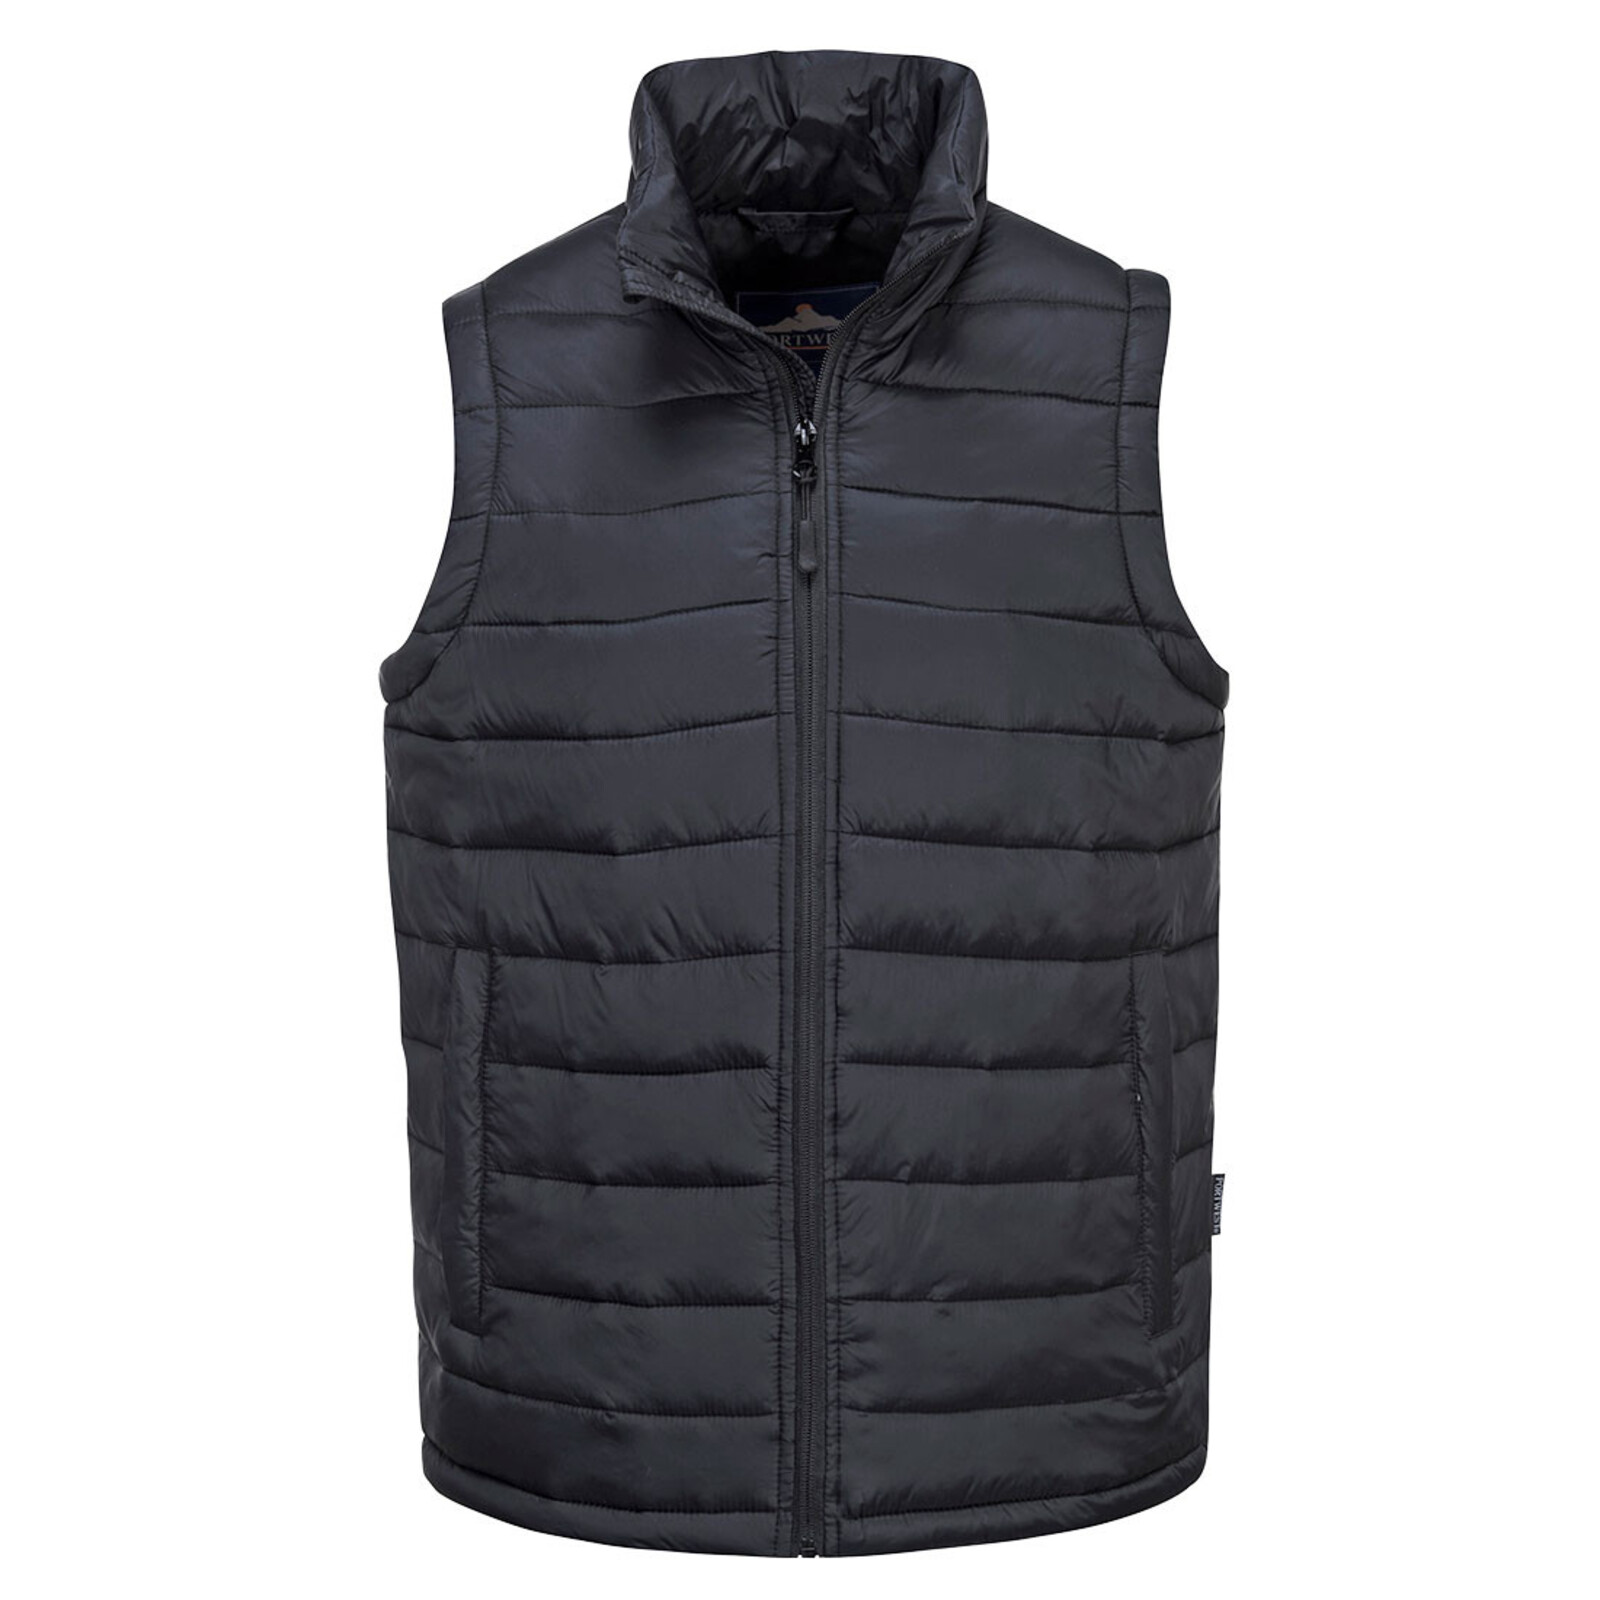 Pánska zateplená termo vesta Portwest Aspen S544 - veľkosť: 3XL, farba: čierna